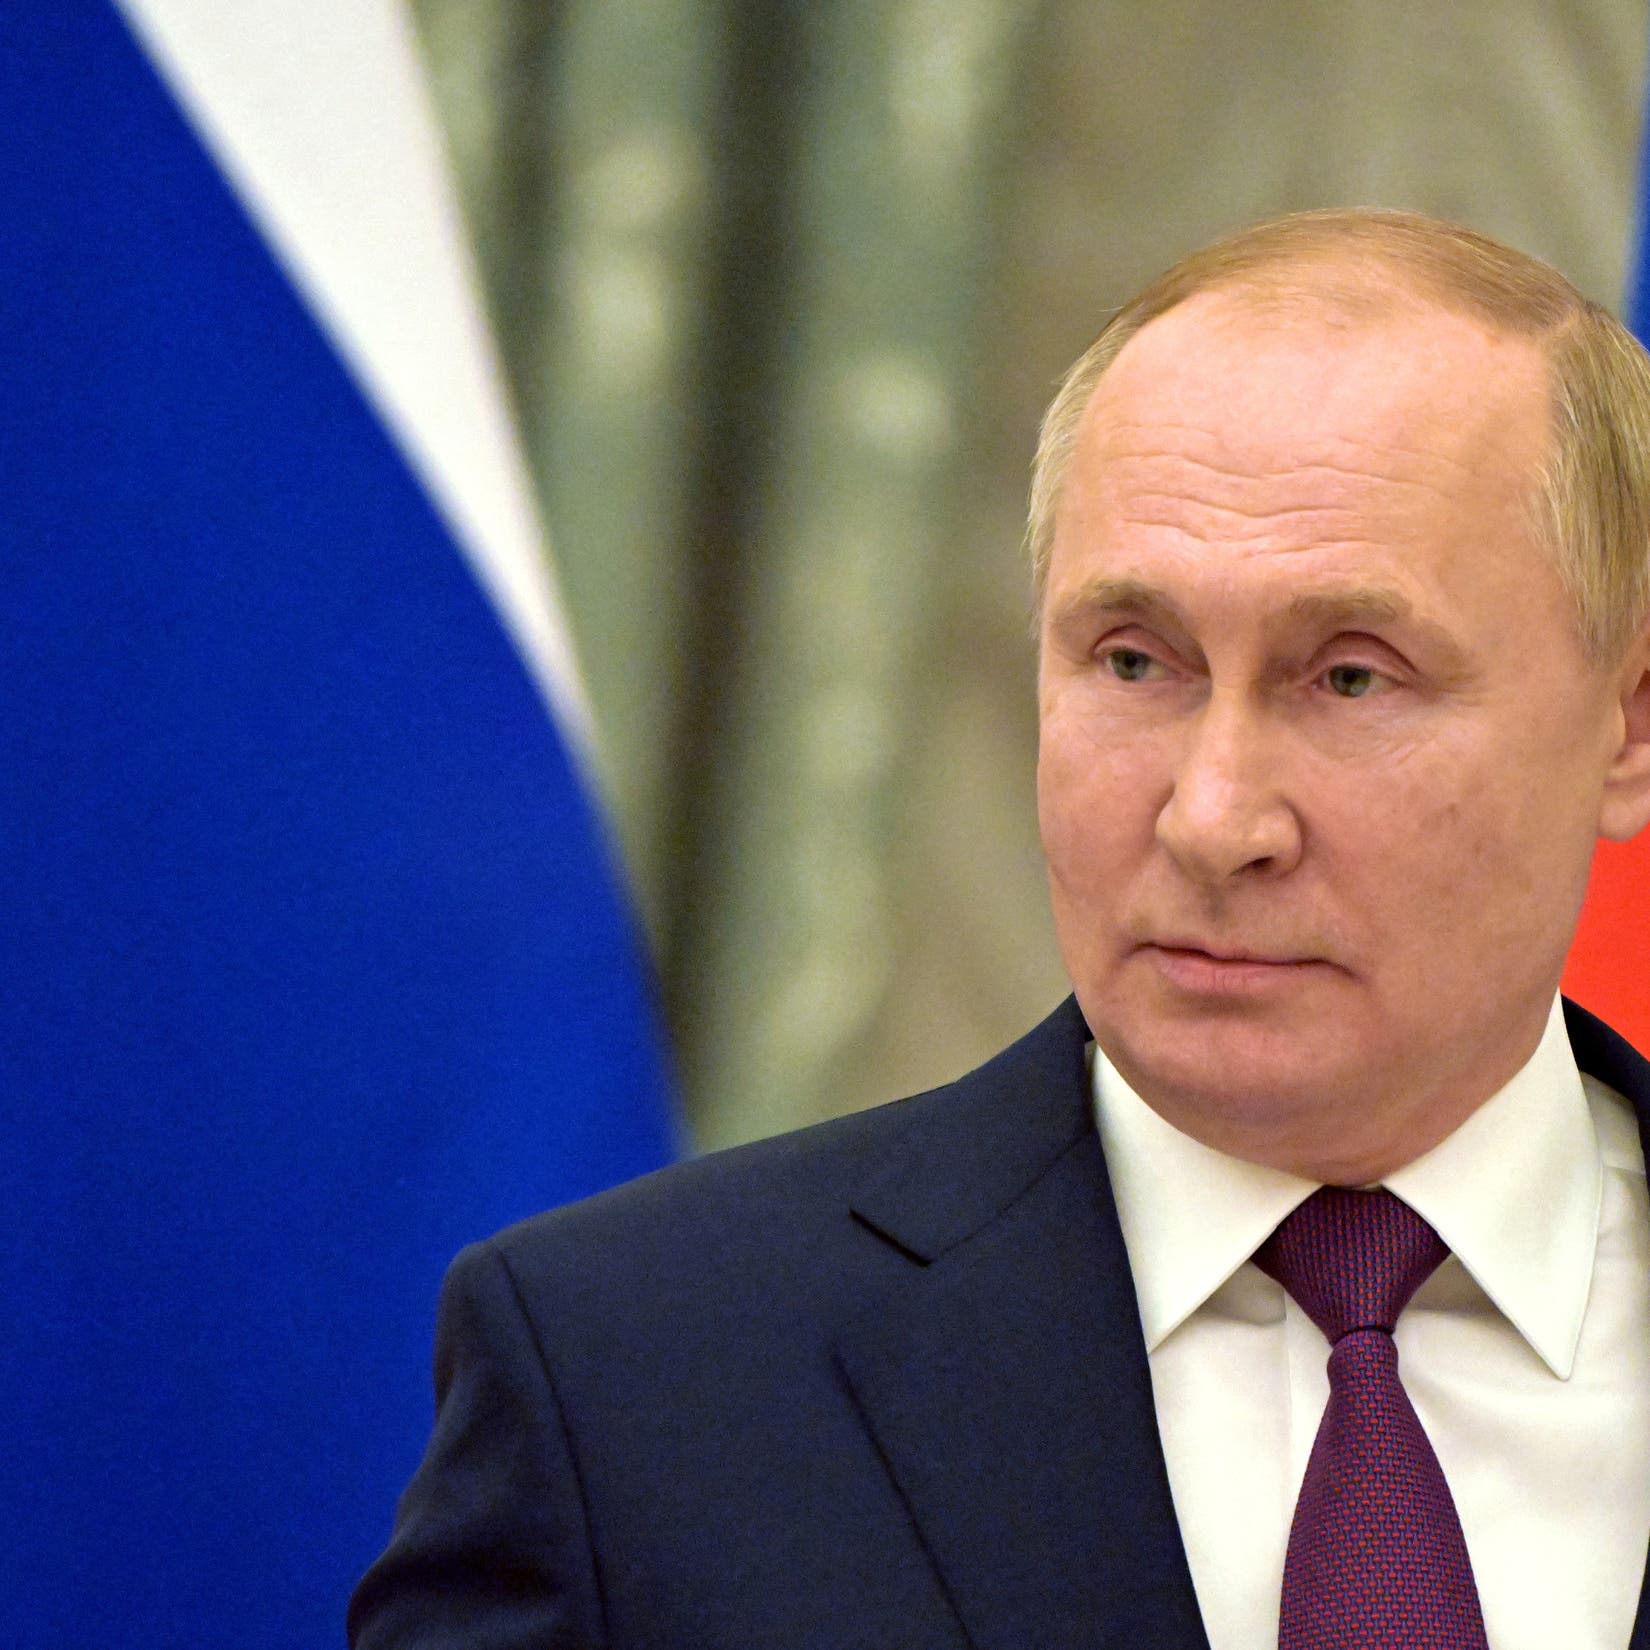 بوتين: أخفقت الرهانات على انهيار اقتصاد روسيا بسبب العقوبات